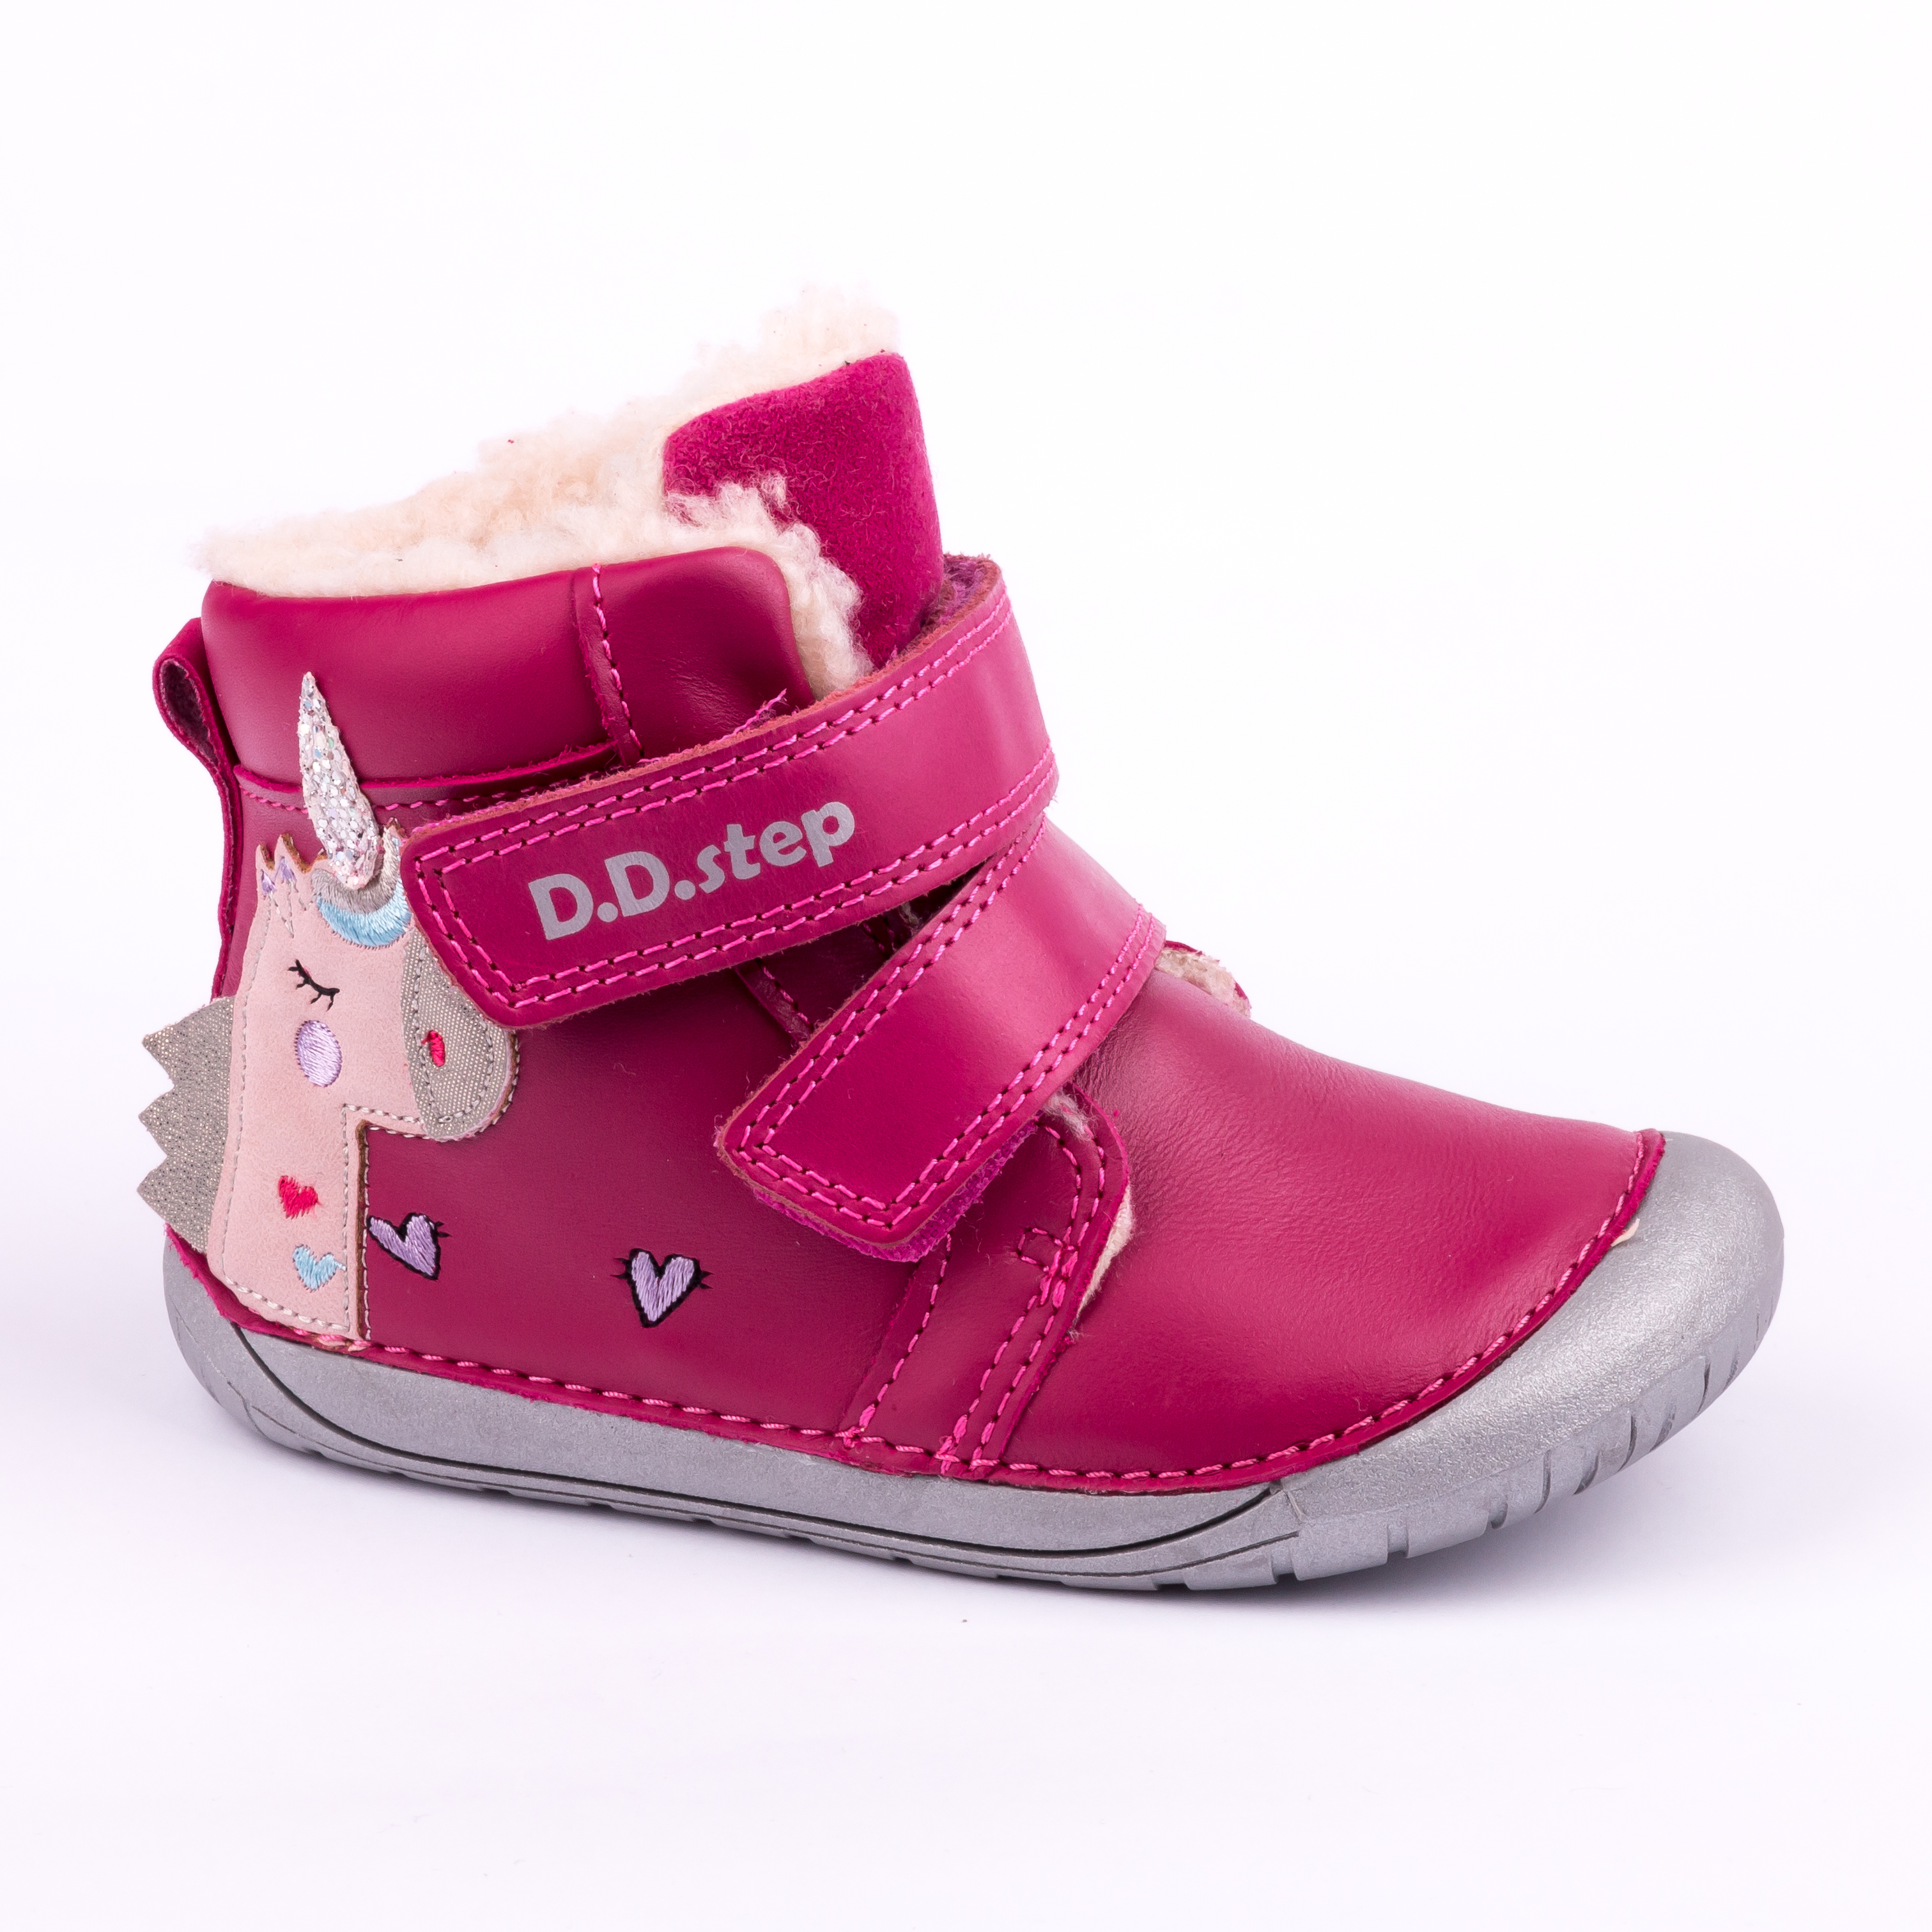 Růžová zimní bota D.D,step